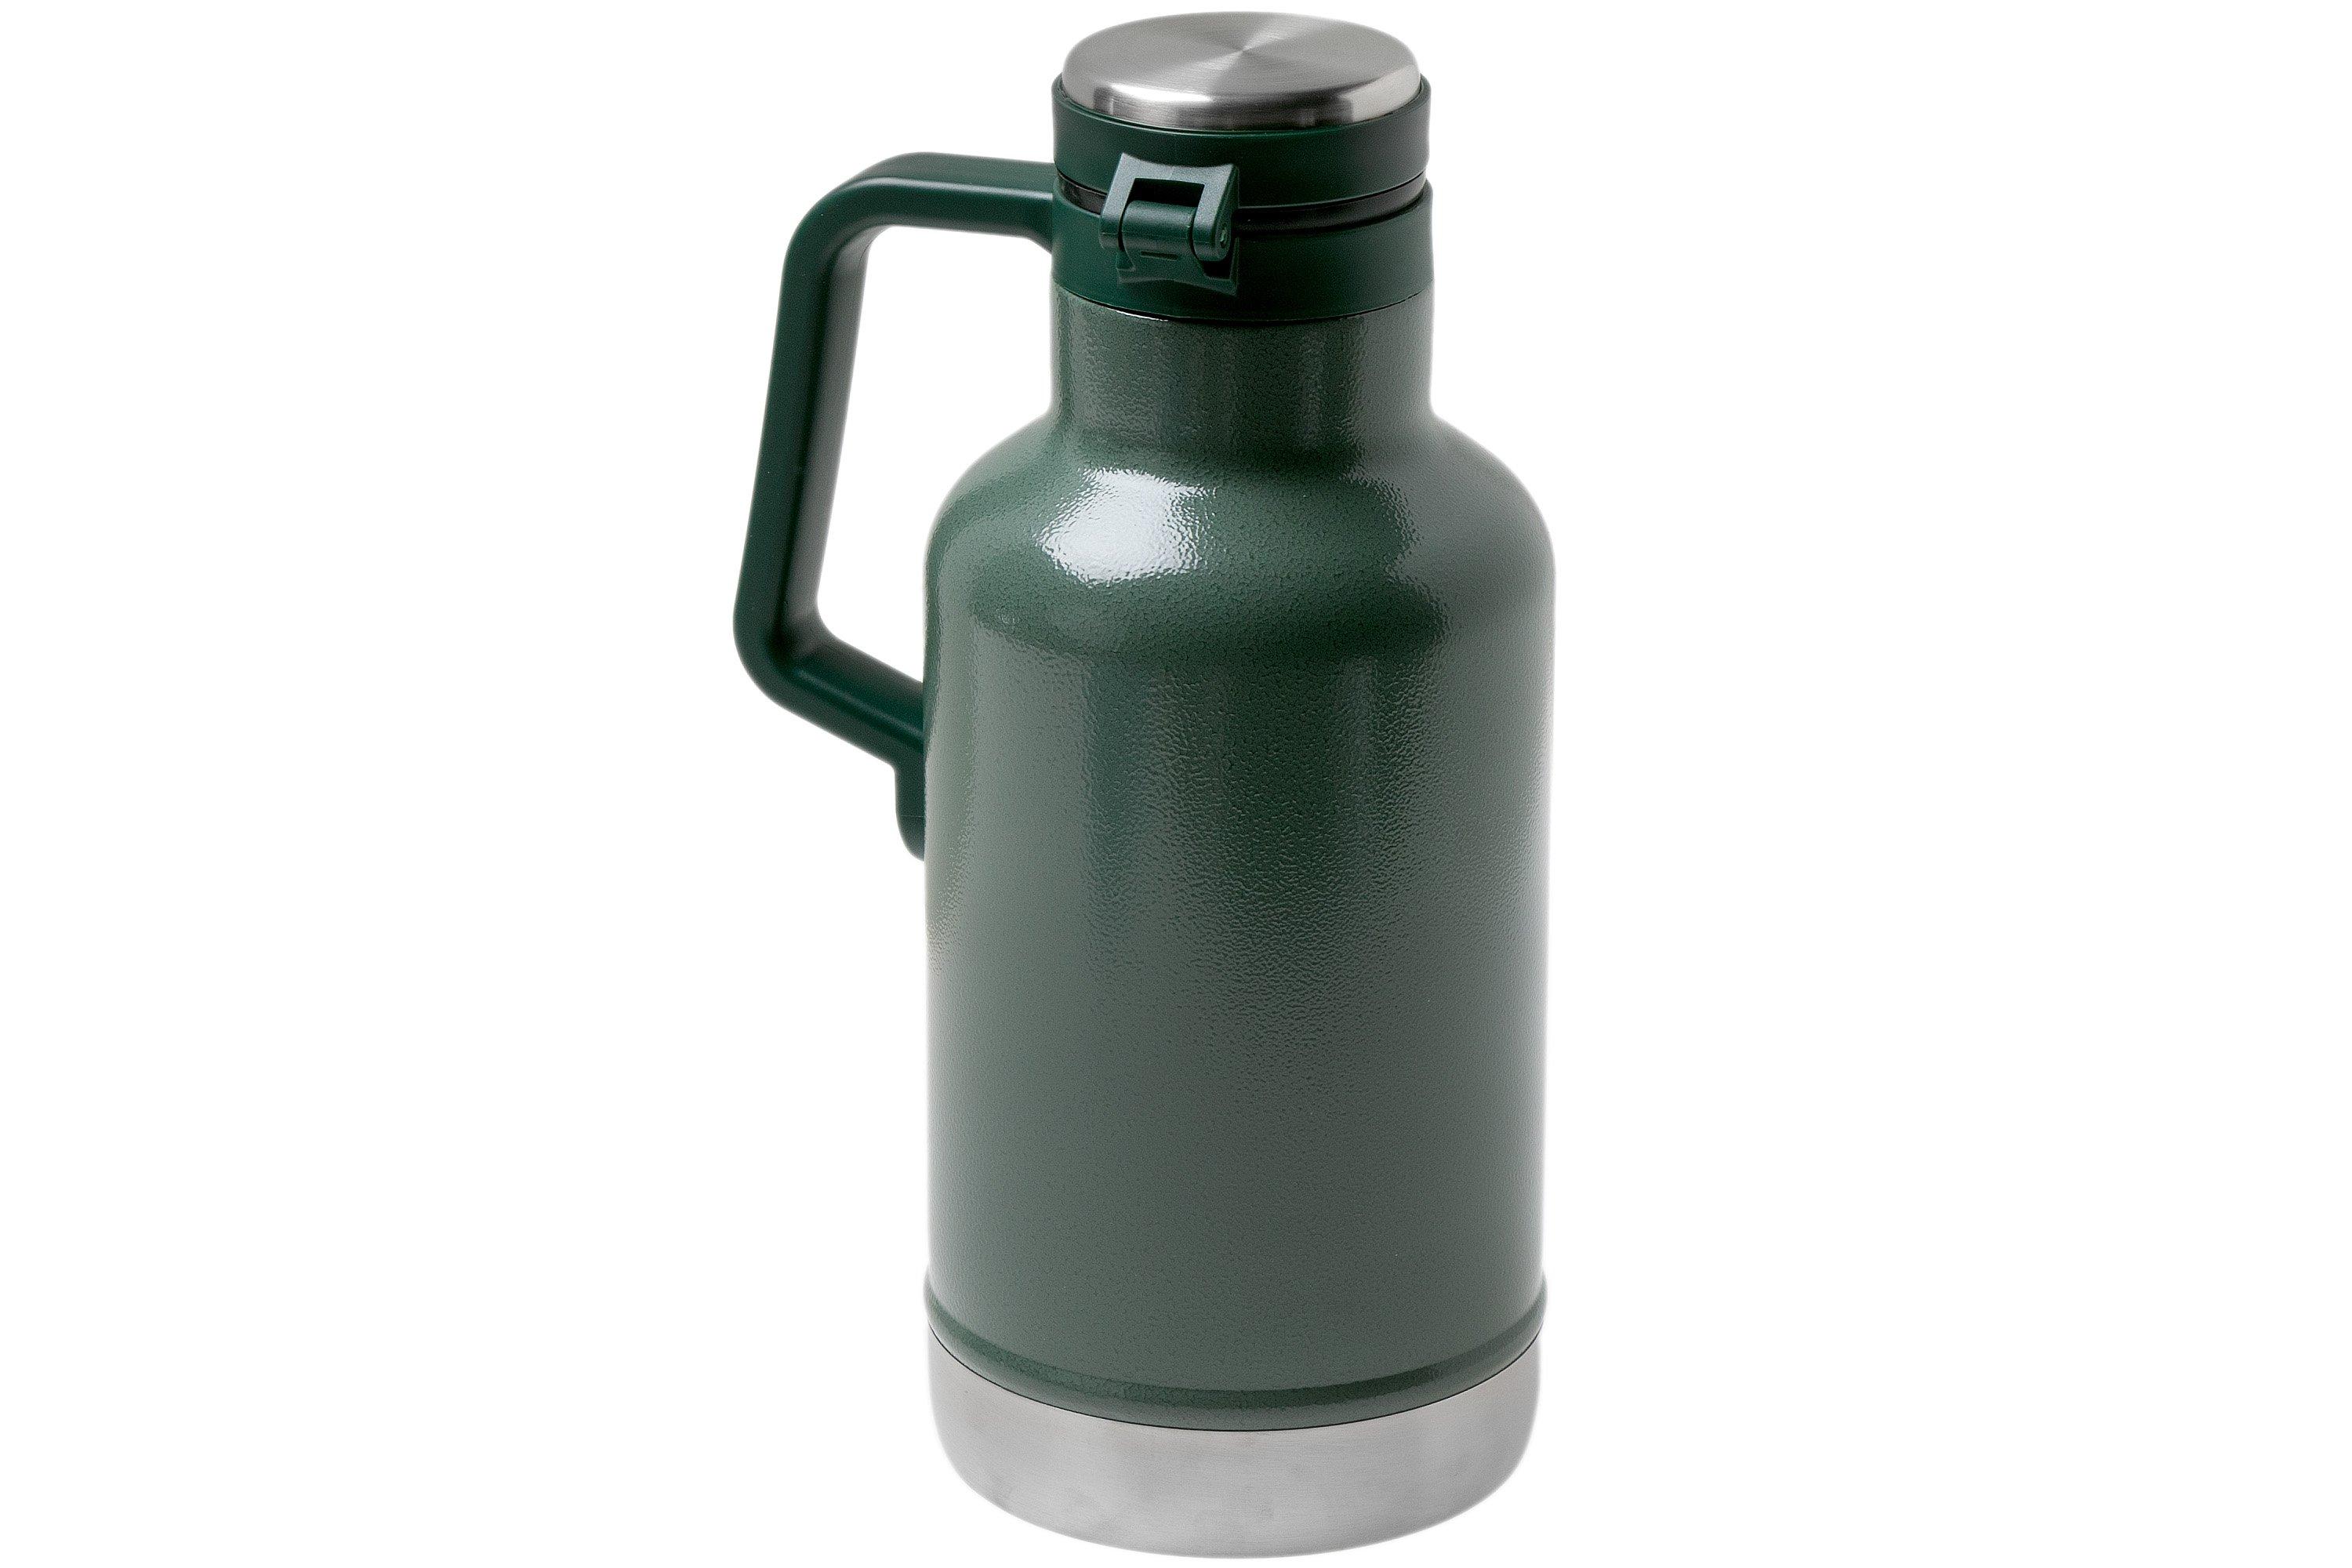 STANLEY insulated bottle XL 1.9 liter